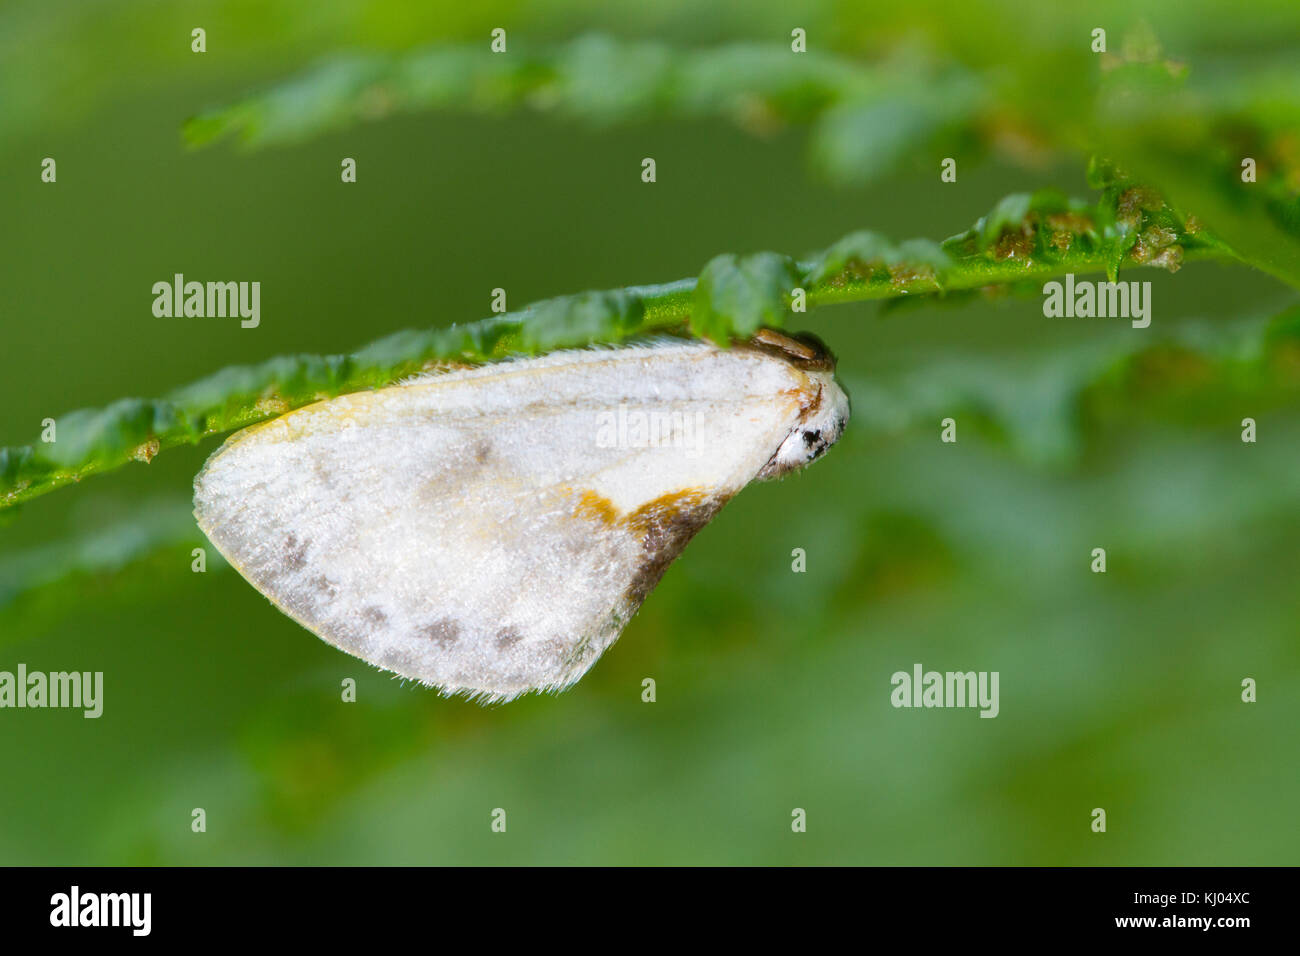 Chinesische Zeichen (Cilix glaucata) erwachsenen Motten Ruhe unter einem Farn Wedel. Moth ist ein Vogel - fallende nachahmen. Powys, Wales. August. Stockfoto